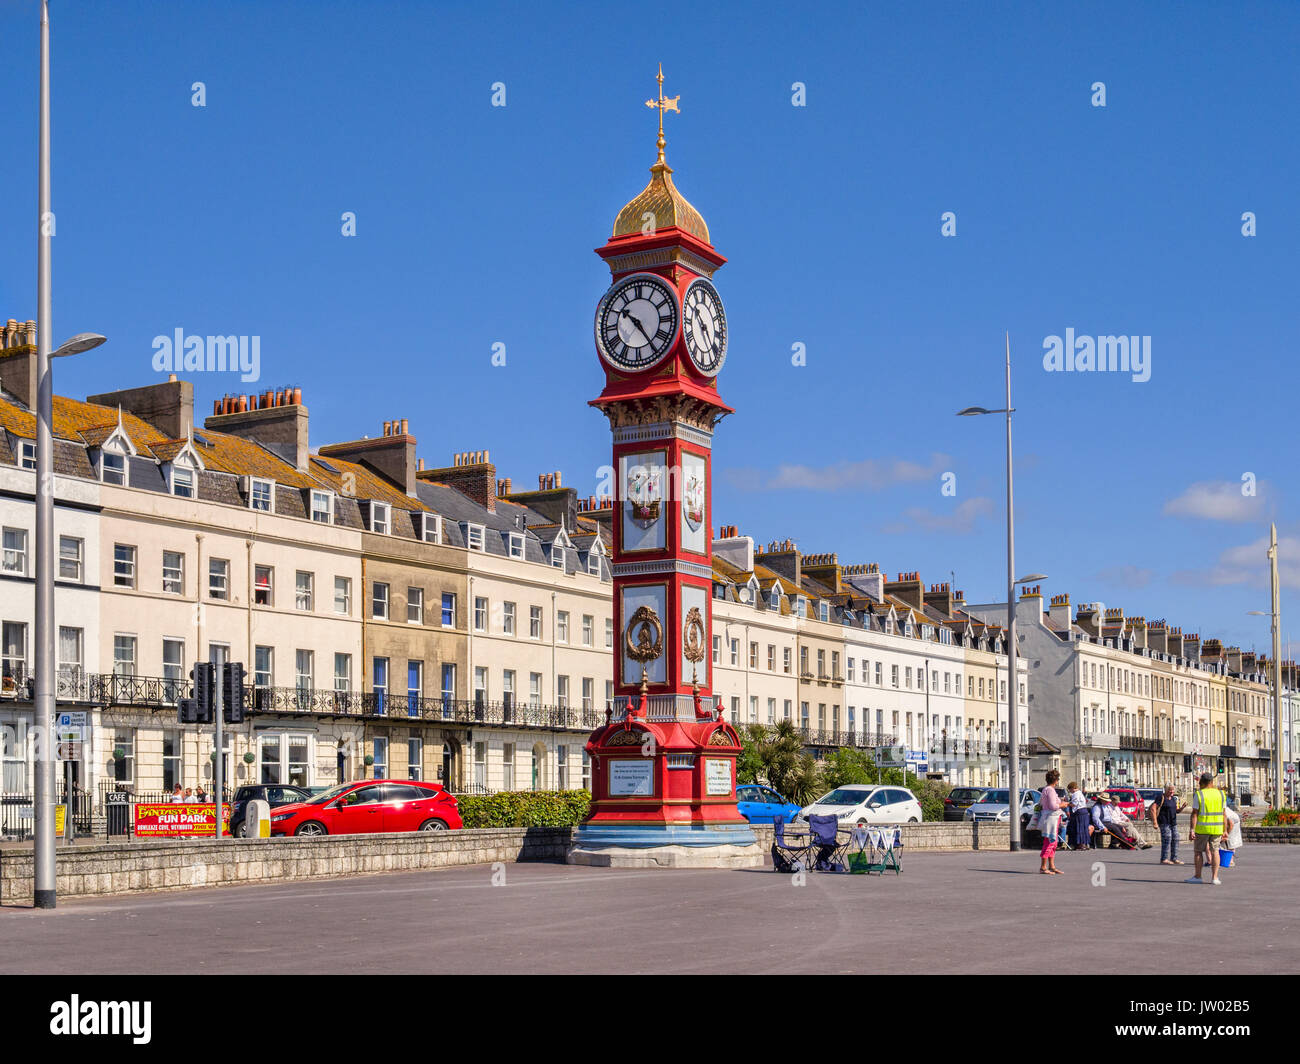 El 2 de julio de 2017: Weymouth, Dorset, Inglaterra, Reino Unido - El Jubileo Torre del Reloj en Weymouth paseo en un hermoso día soleado con el cielo azul claro. Foto de stock